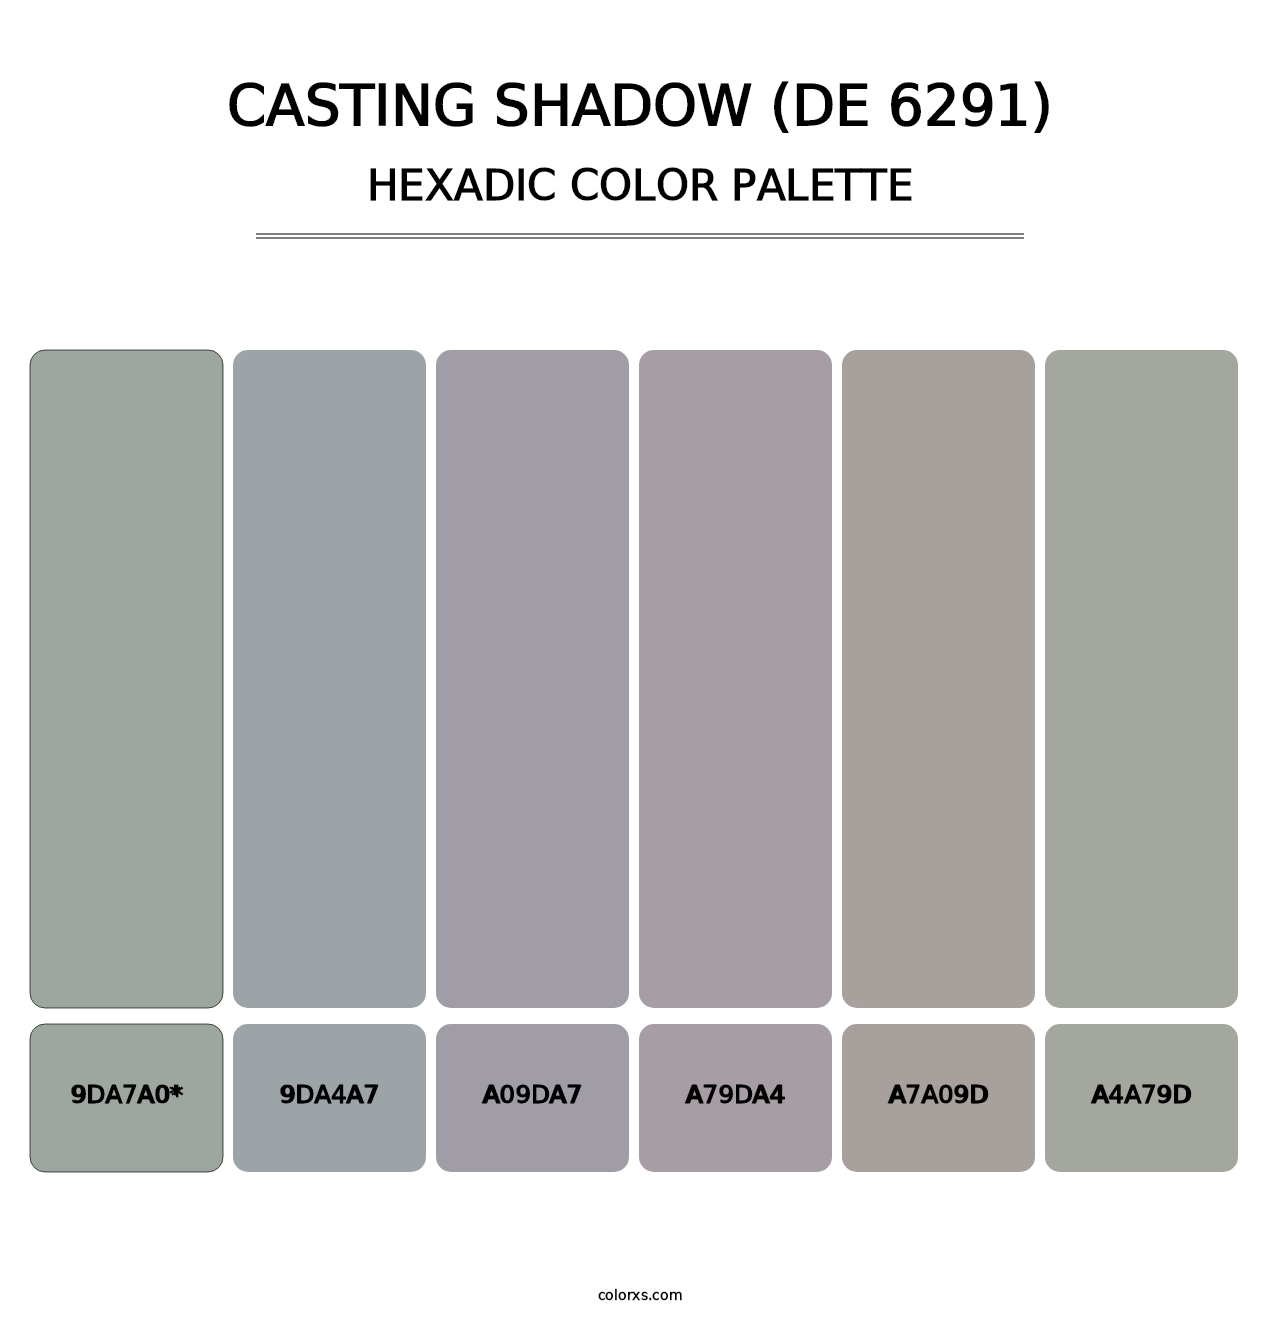 Casting Shadow (DE 6291) - Hexadic Color Palette